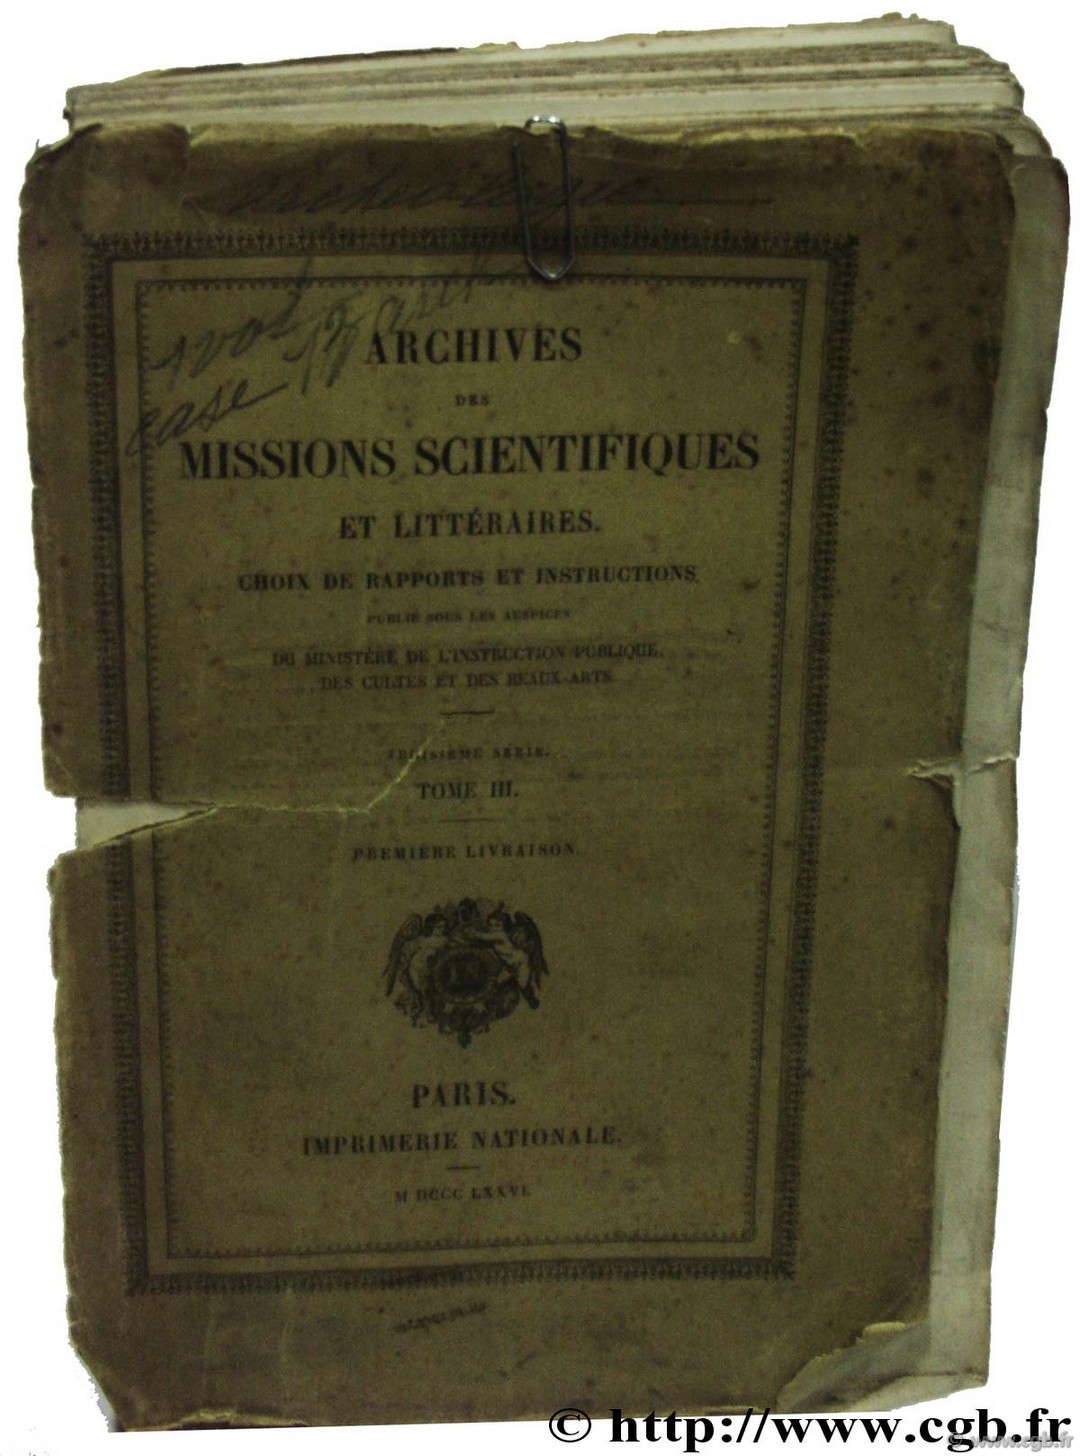 Archives des missions scientifiques et littéraires - Choix de rapports et instructions - Troisième série - Tome III Collectif